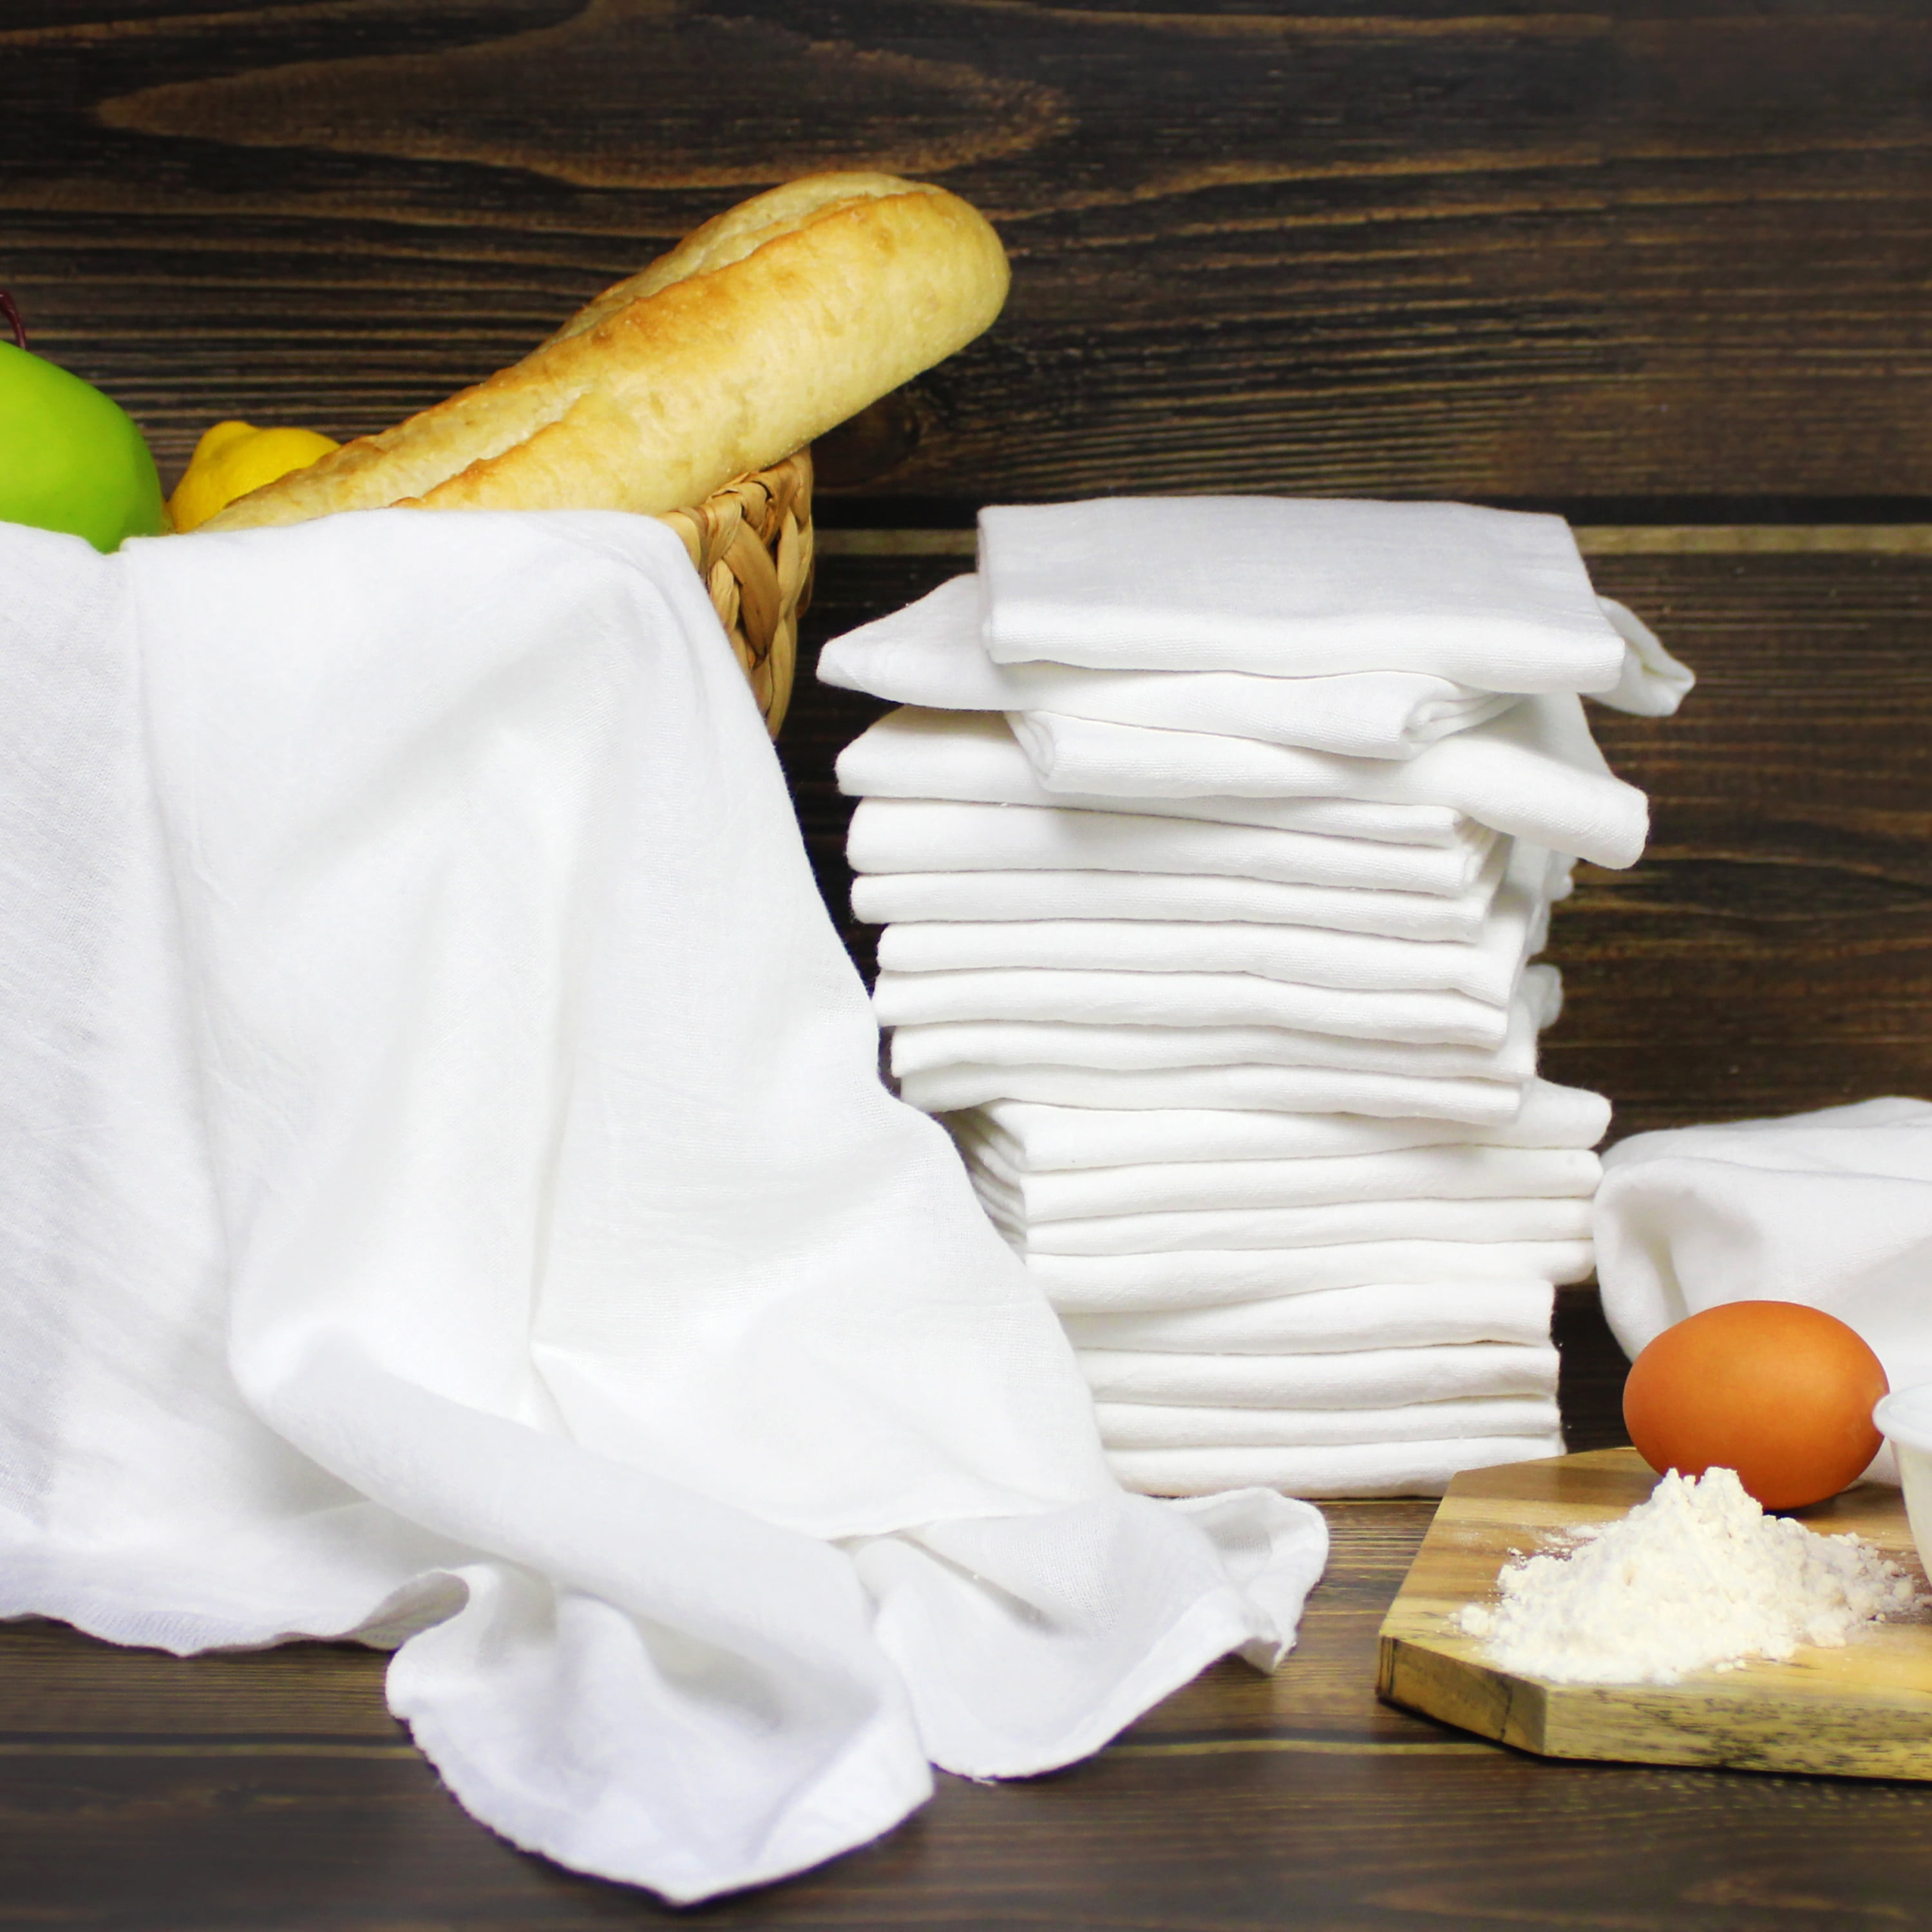 New 2 Pk Retro Style Tea Time White Flour Sack Kitchen Hand Dish Towels 